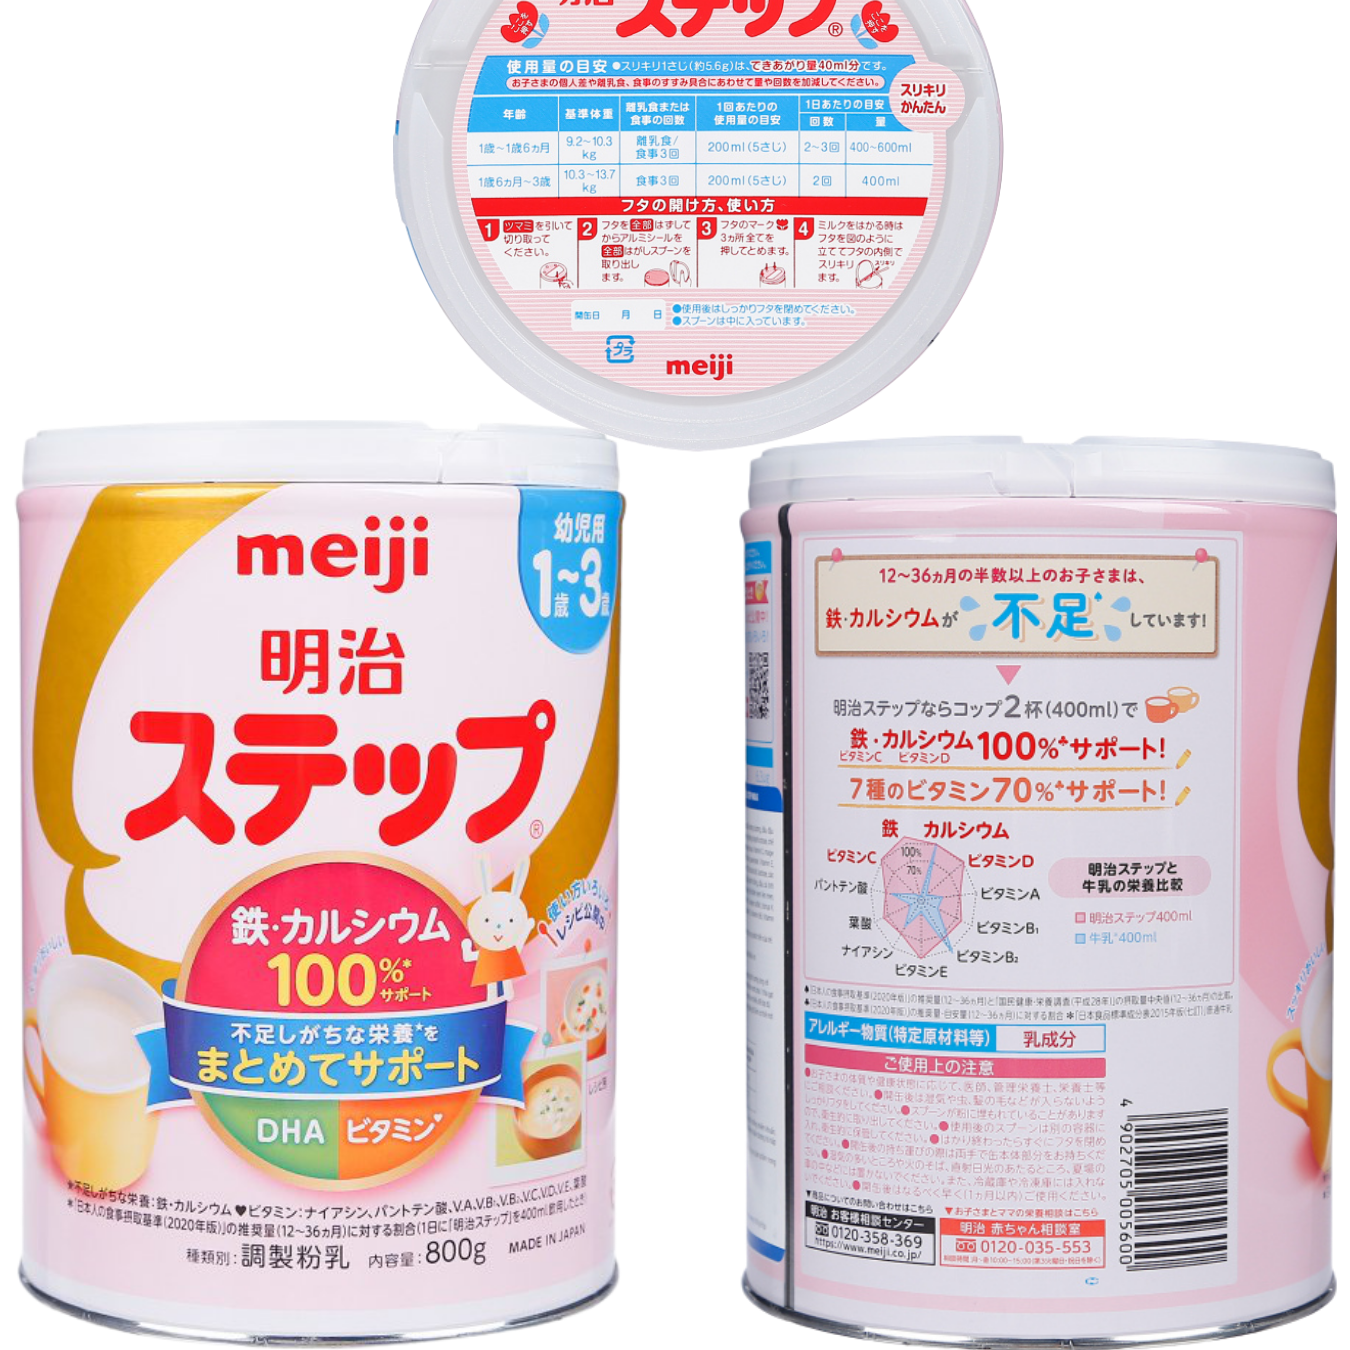 Sữa Nhật Cho Bé Tăng Cân Từ 1 Đến 3 Tuổi Meiji Hỗ Trợ Tăng Hệ Miễn Dịch, Tạo Hệ Tiêu Hóa Tốt Hấp Thụ Dưỡng Chất Hiệu Quả Giúp Bé Phát Triển Cân Đối Nhất Cả Về Chiều Cao, Cân Nặng, Trí Não – 1 Hộp